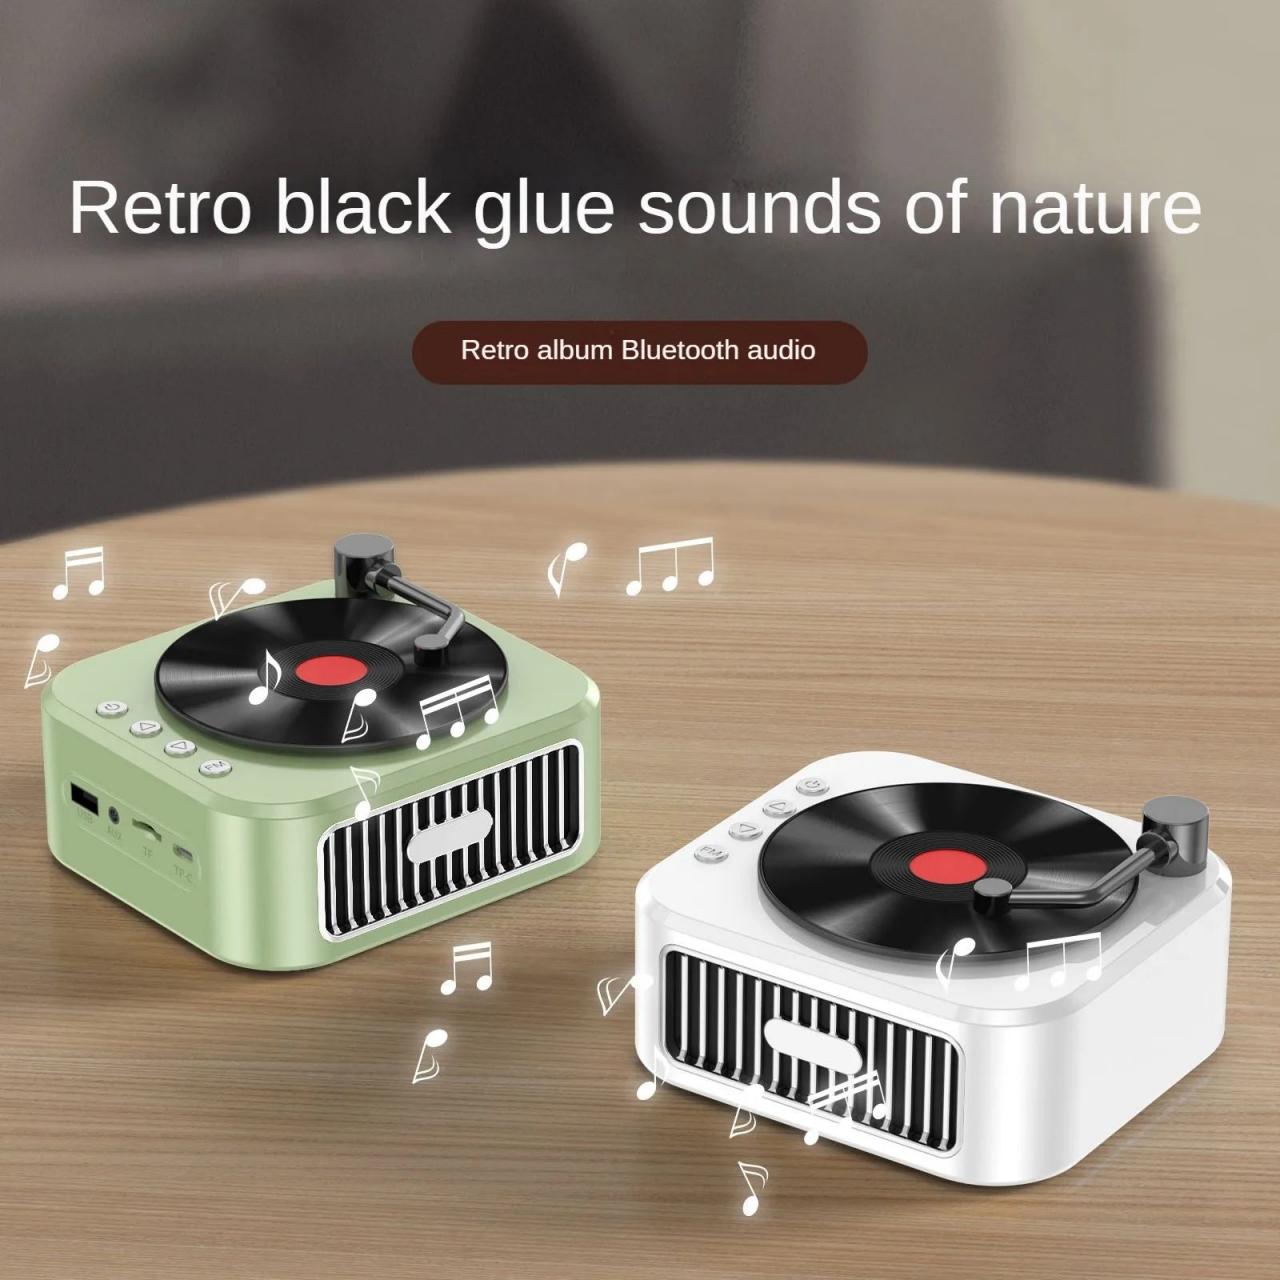 Vintage-inspired Mini Bluetooth Turntable Speaker System